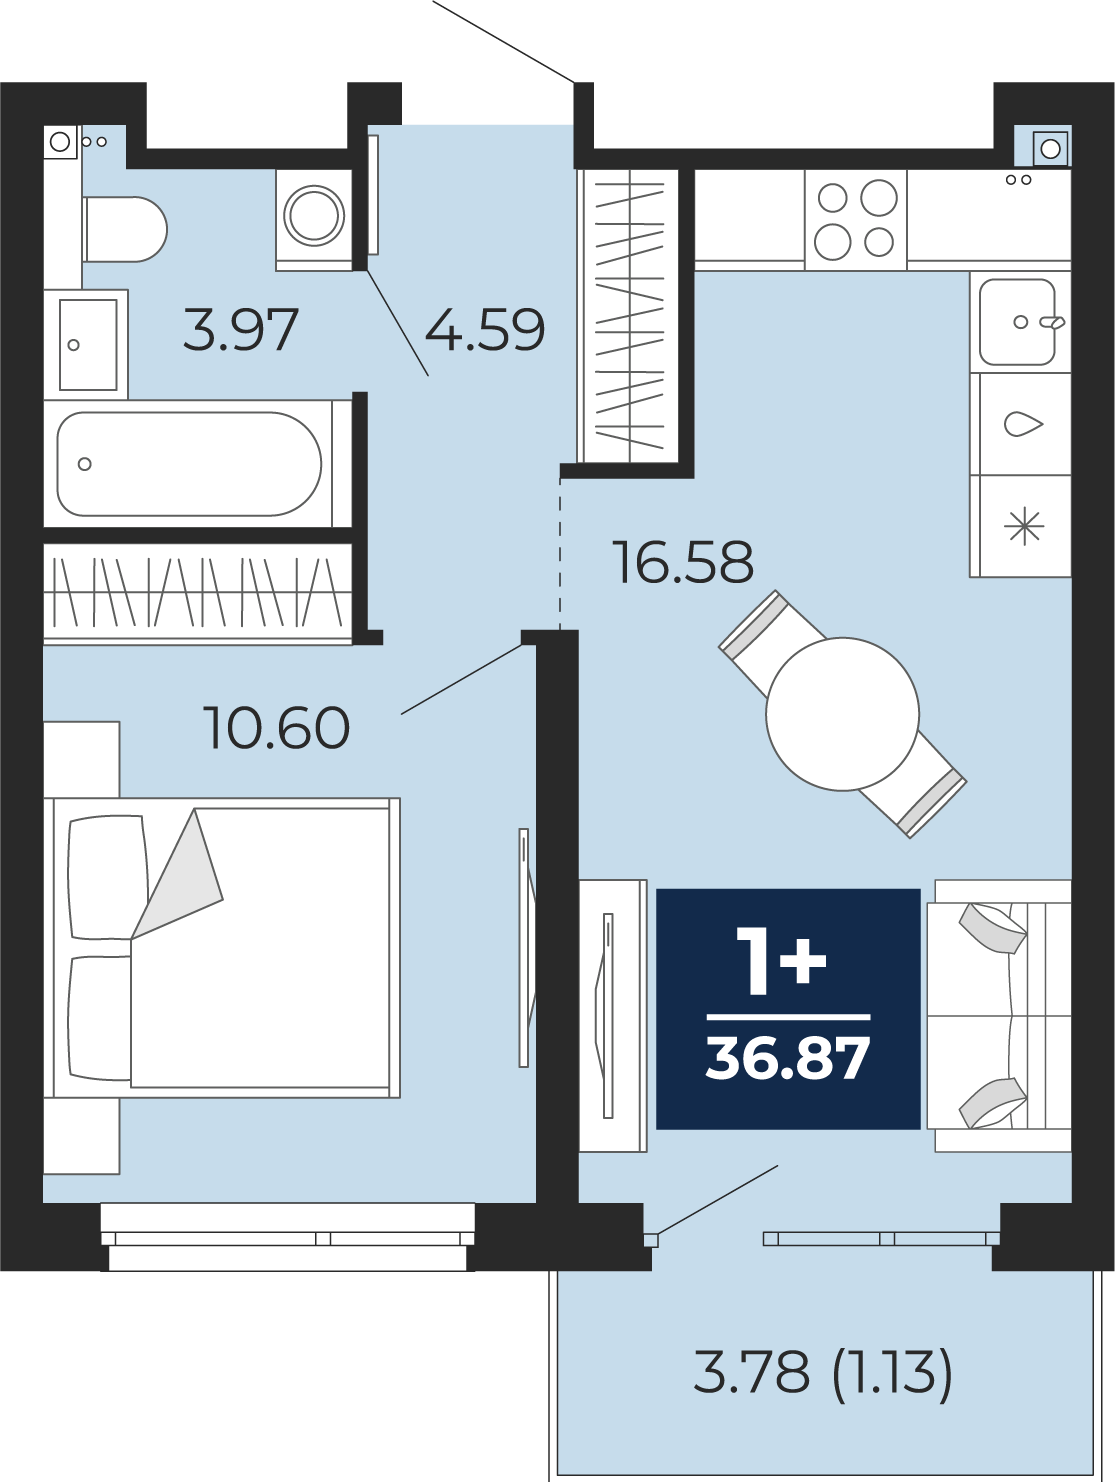 Квартира № 206, 1-комнатная, 36.87 кв. м, 10 этаж